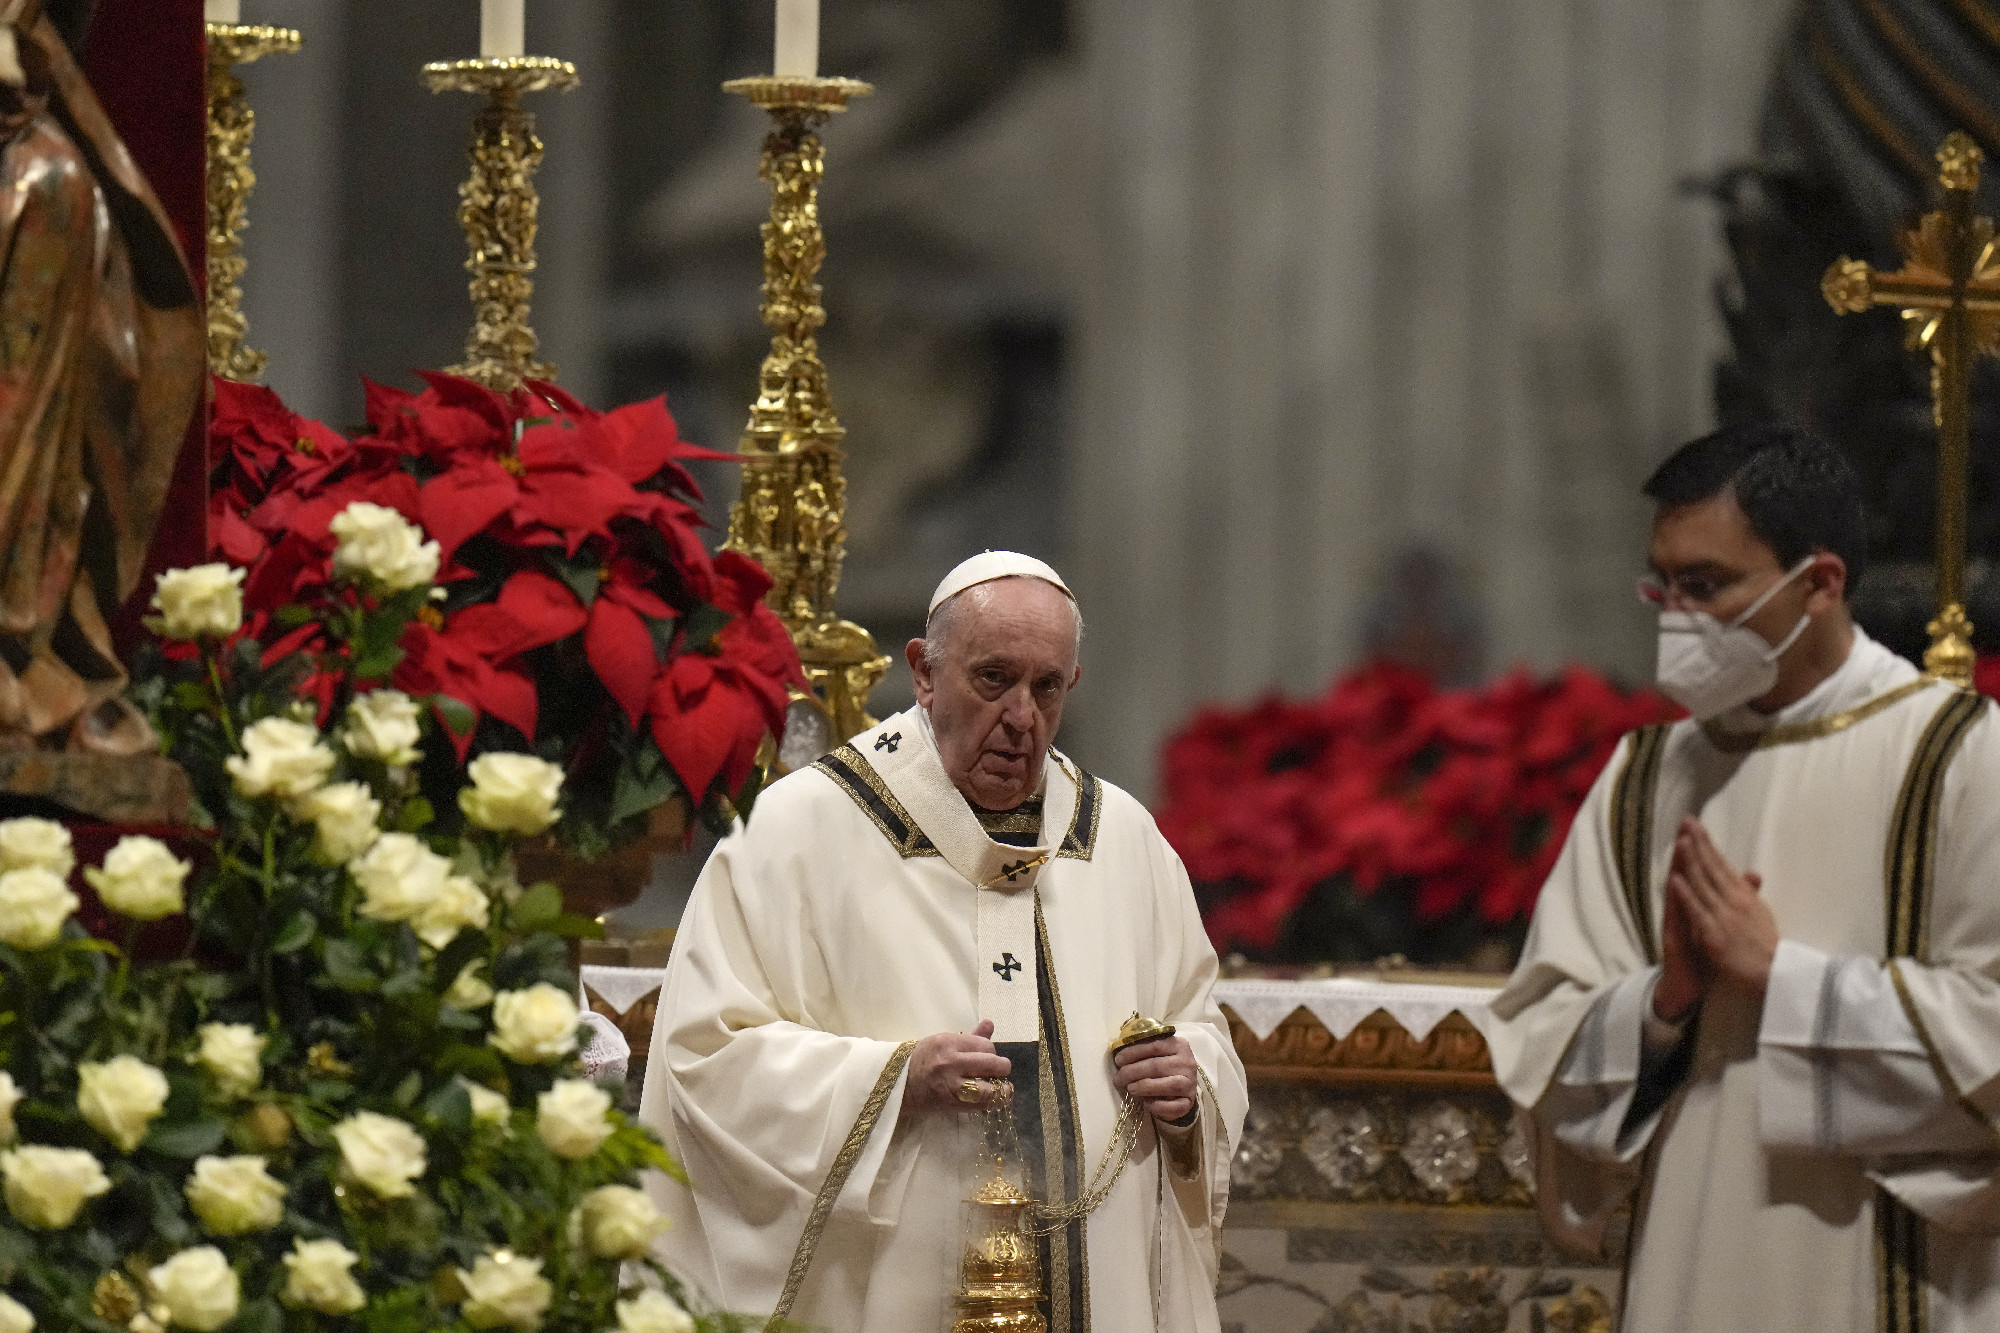 A szegények, a gyengék, a munkából élők elismerését szorgalmazta a pápa